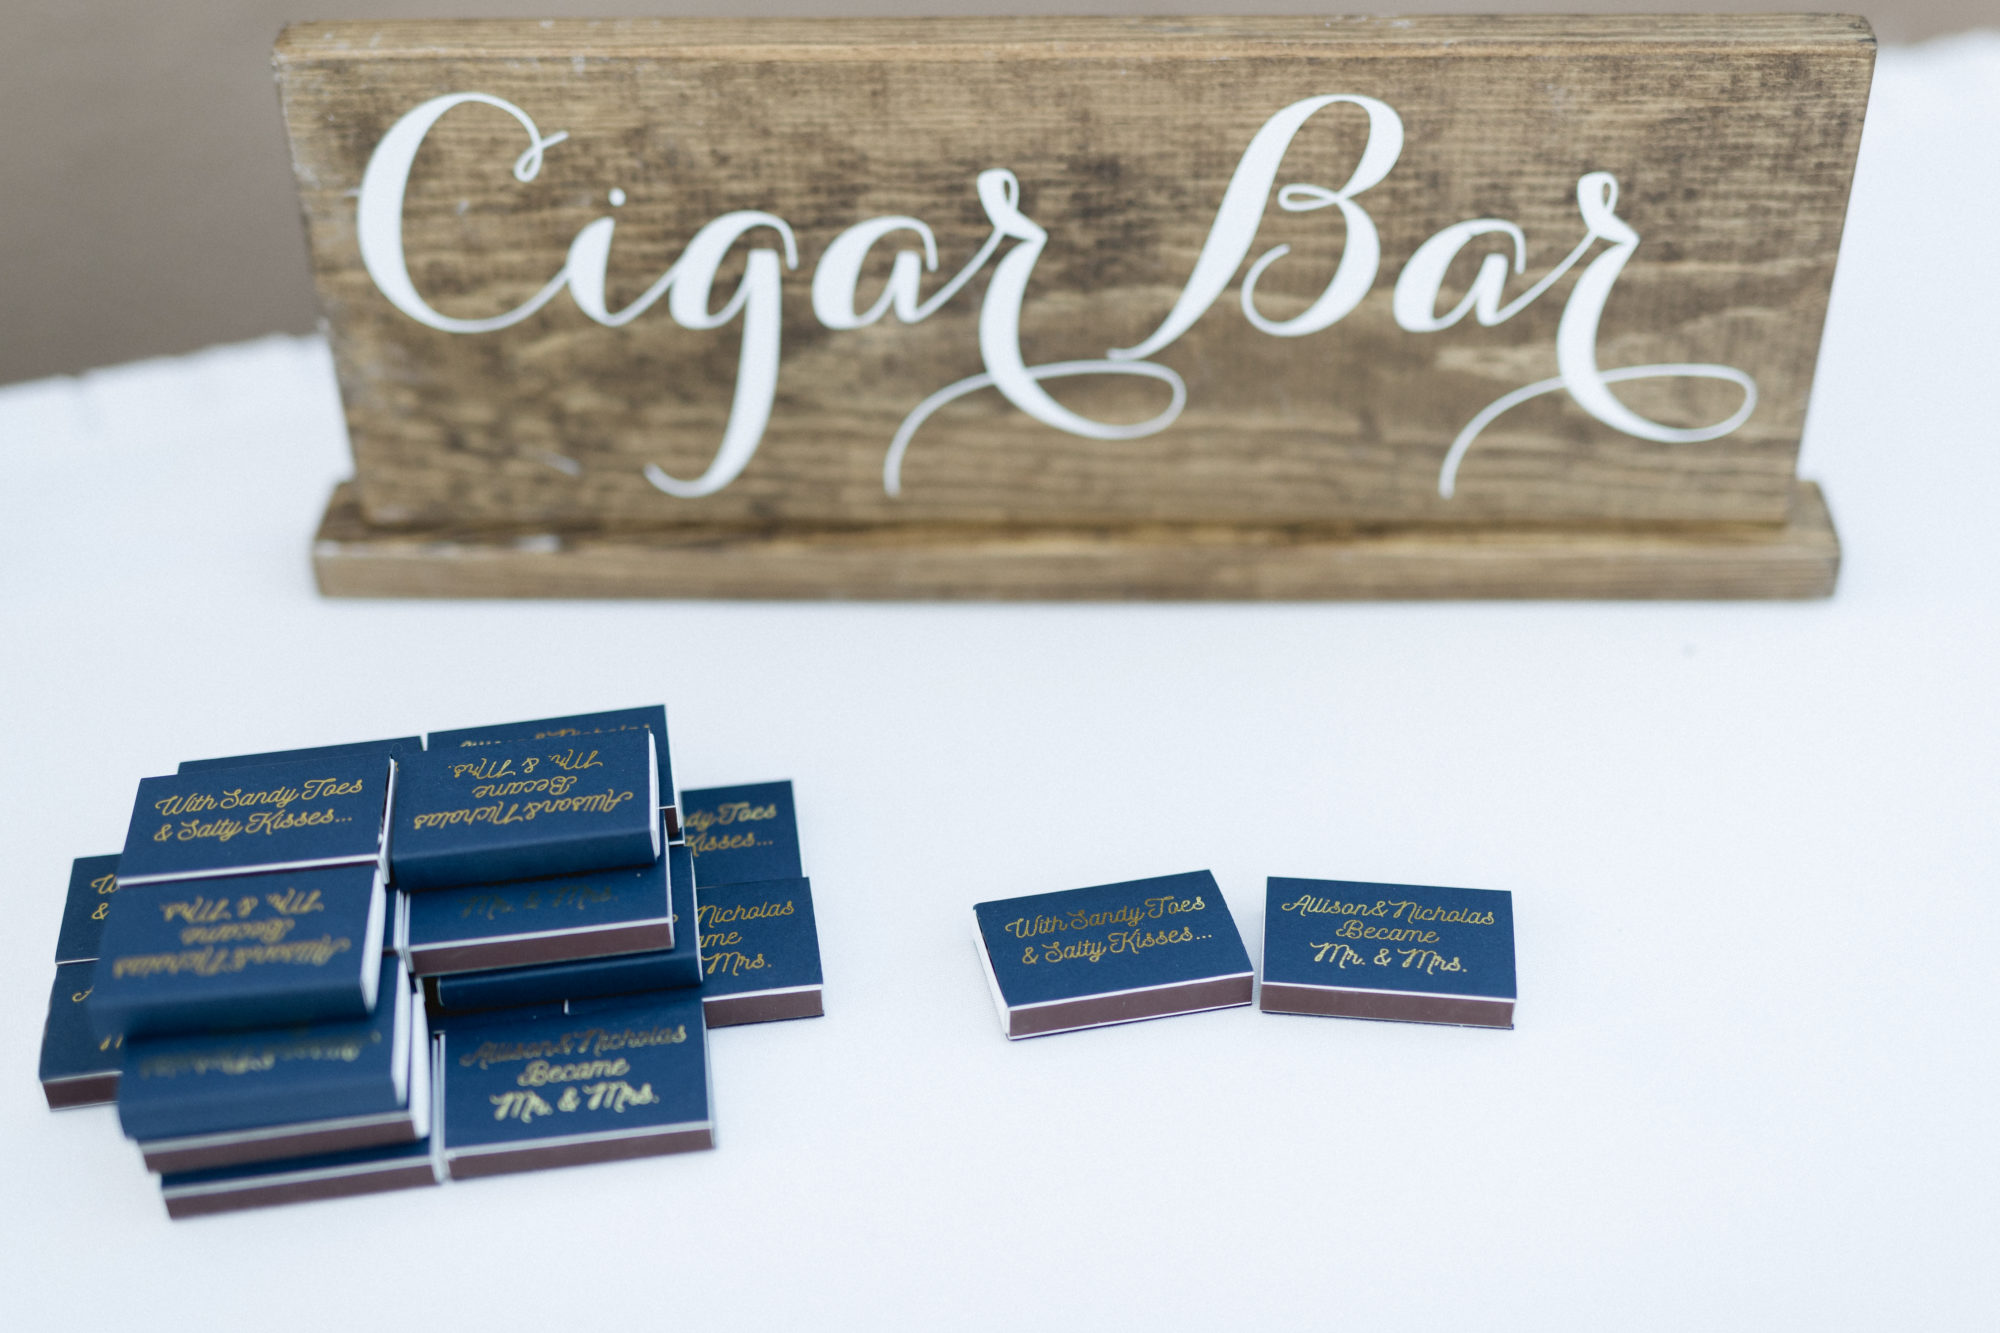 Cigar bar 